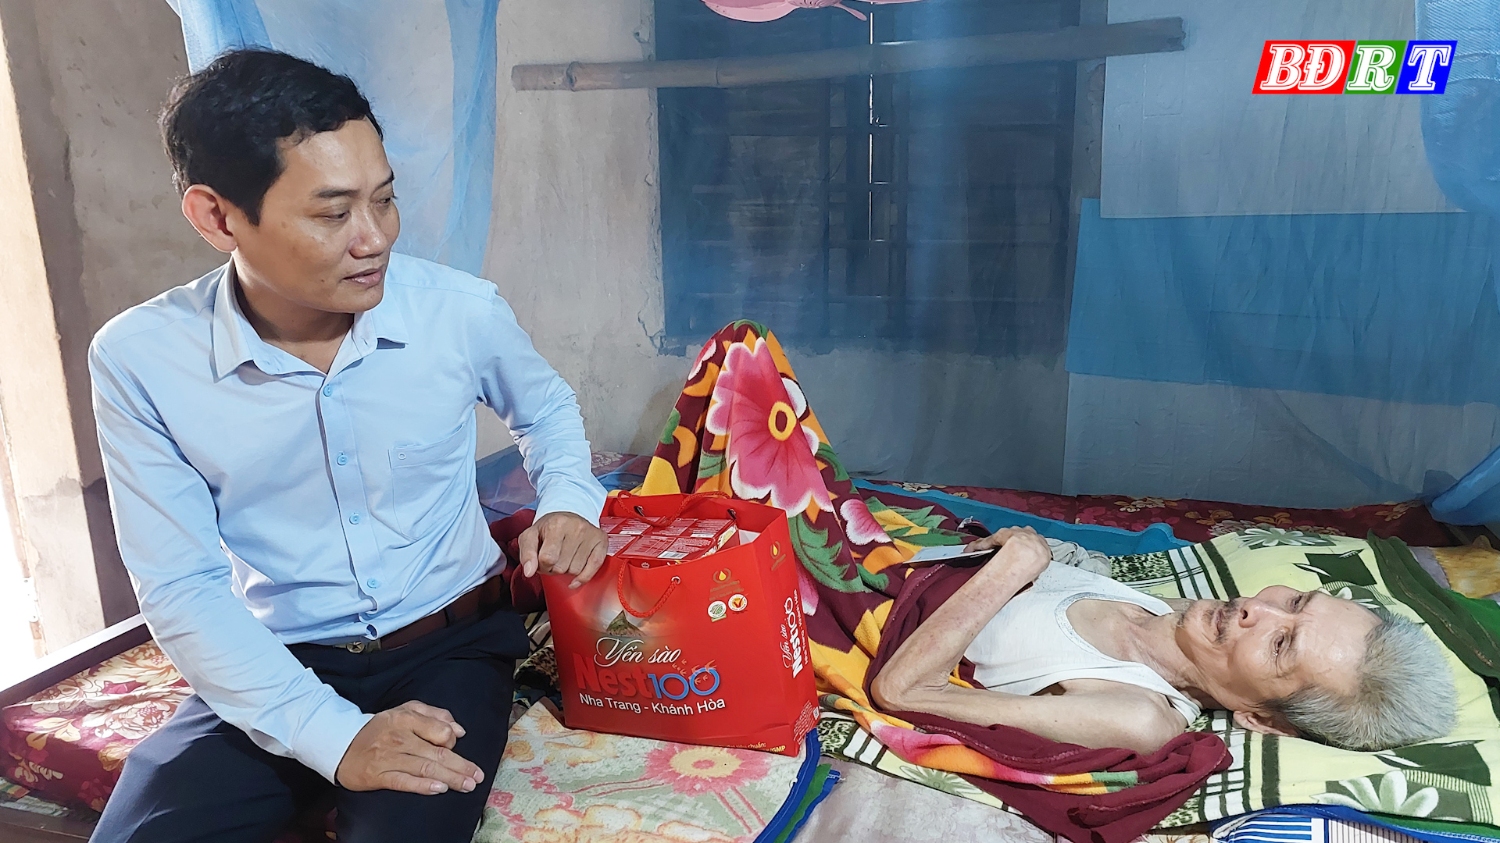 Đồng chí Nguyễn Văn Tình, Phó Chủ tịch UBND thị xã Ba Đồn đã đi thăm và tặng quà ông Hoàn Hữu Ruân thôn Bắc Minh Lệ